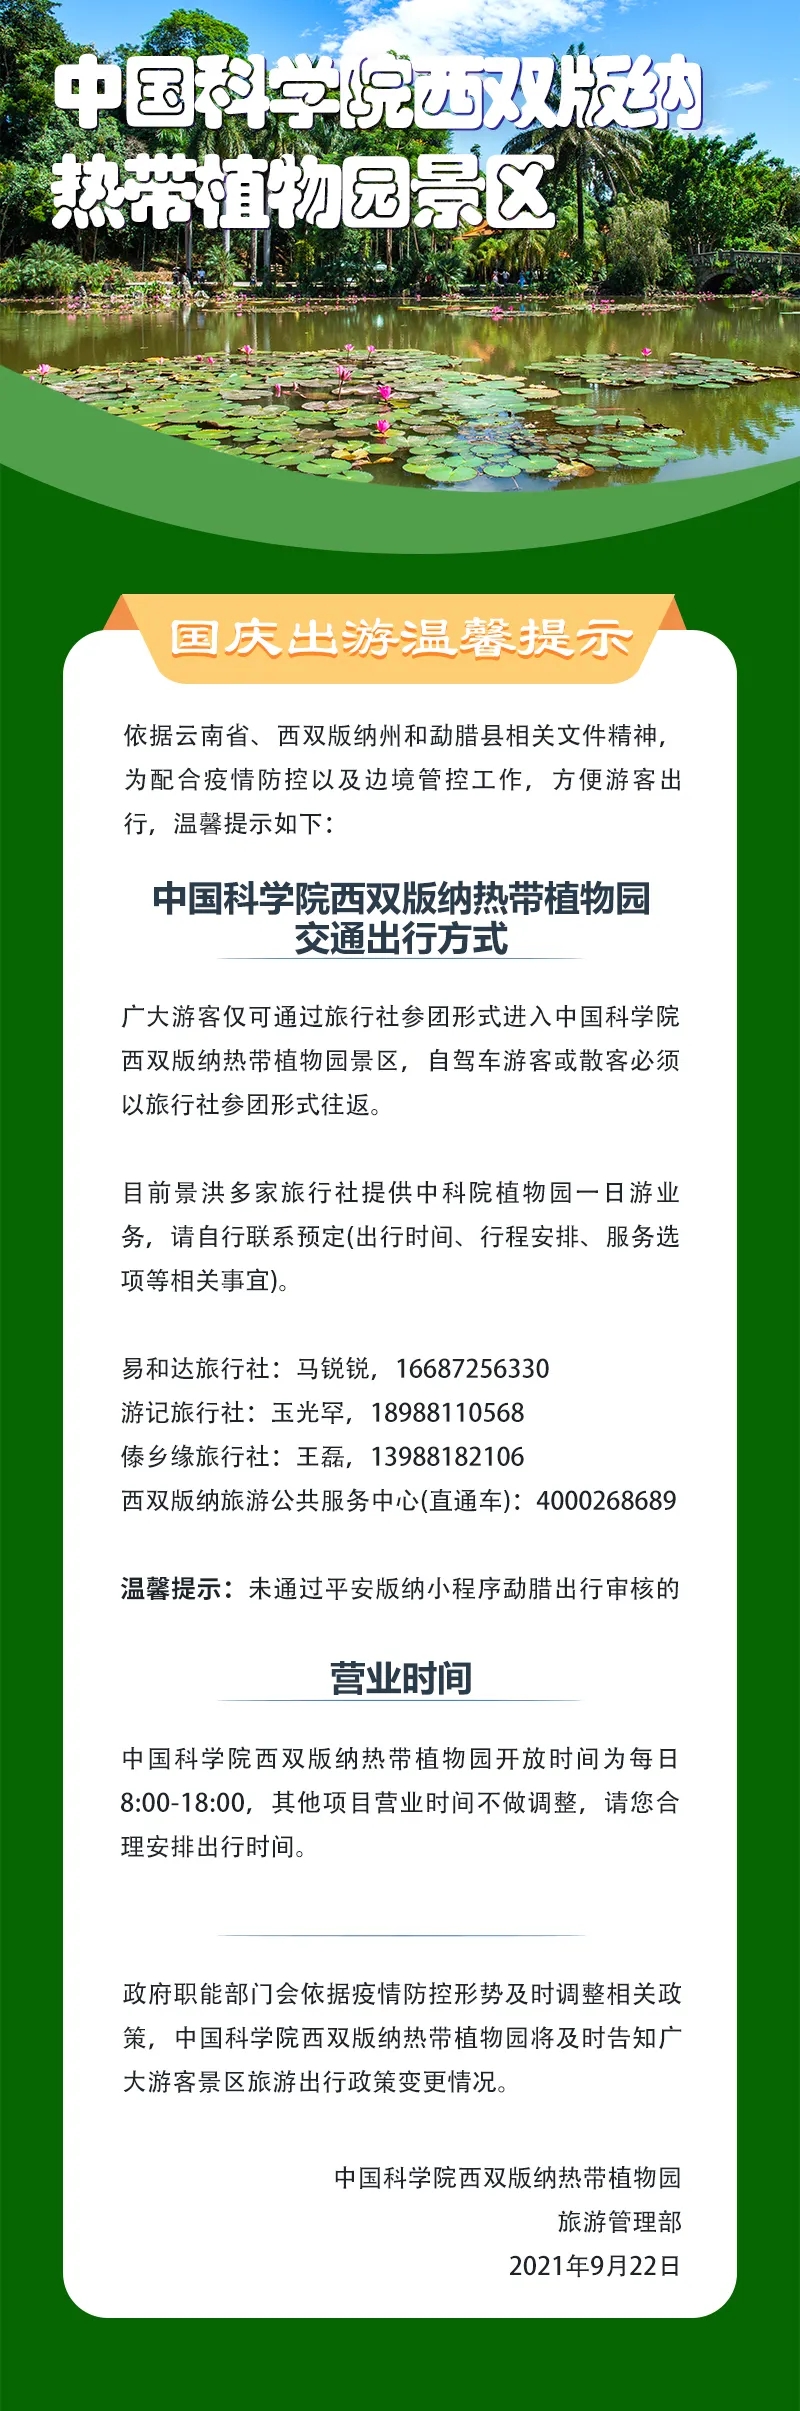 云南多家景区发布国庆出游防疫提示 图片来源于云南省文化和旅游厅